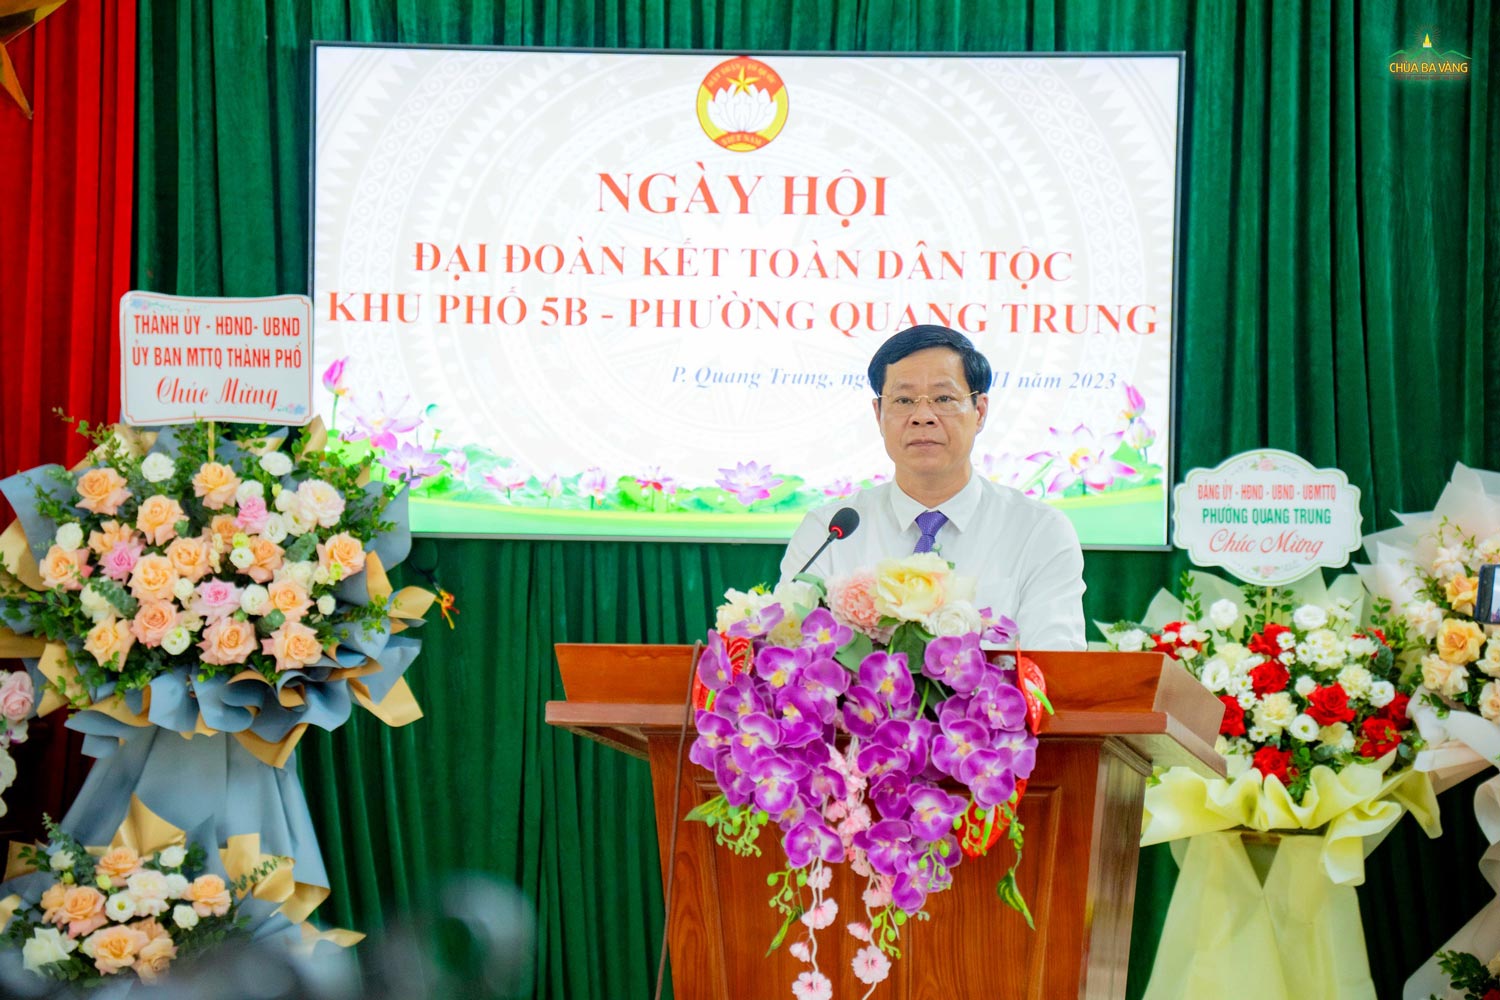 Chung vui với Nhân dân địa phương, ông Phạm Tuấn Đạt, Phó Bí thư Thành ủy, Chủ tịch UBND thành phố đã biểu dương những kết quả khu phố 5B đạt được trong thời gian qua